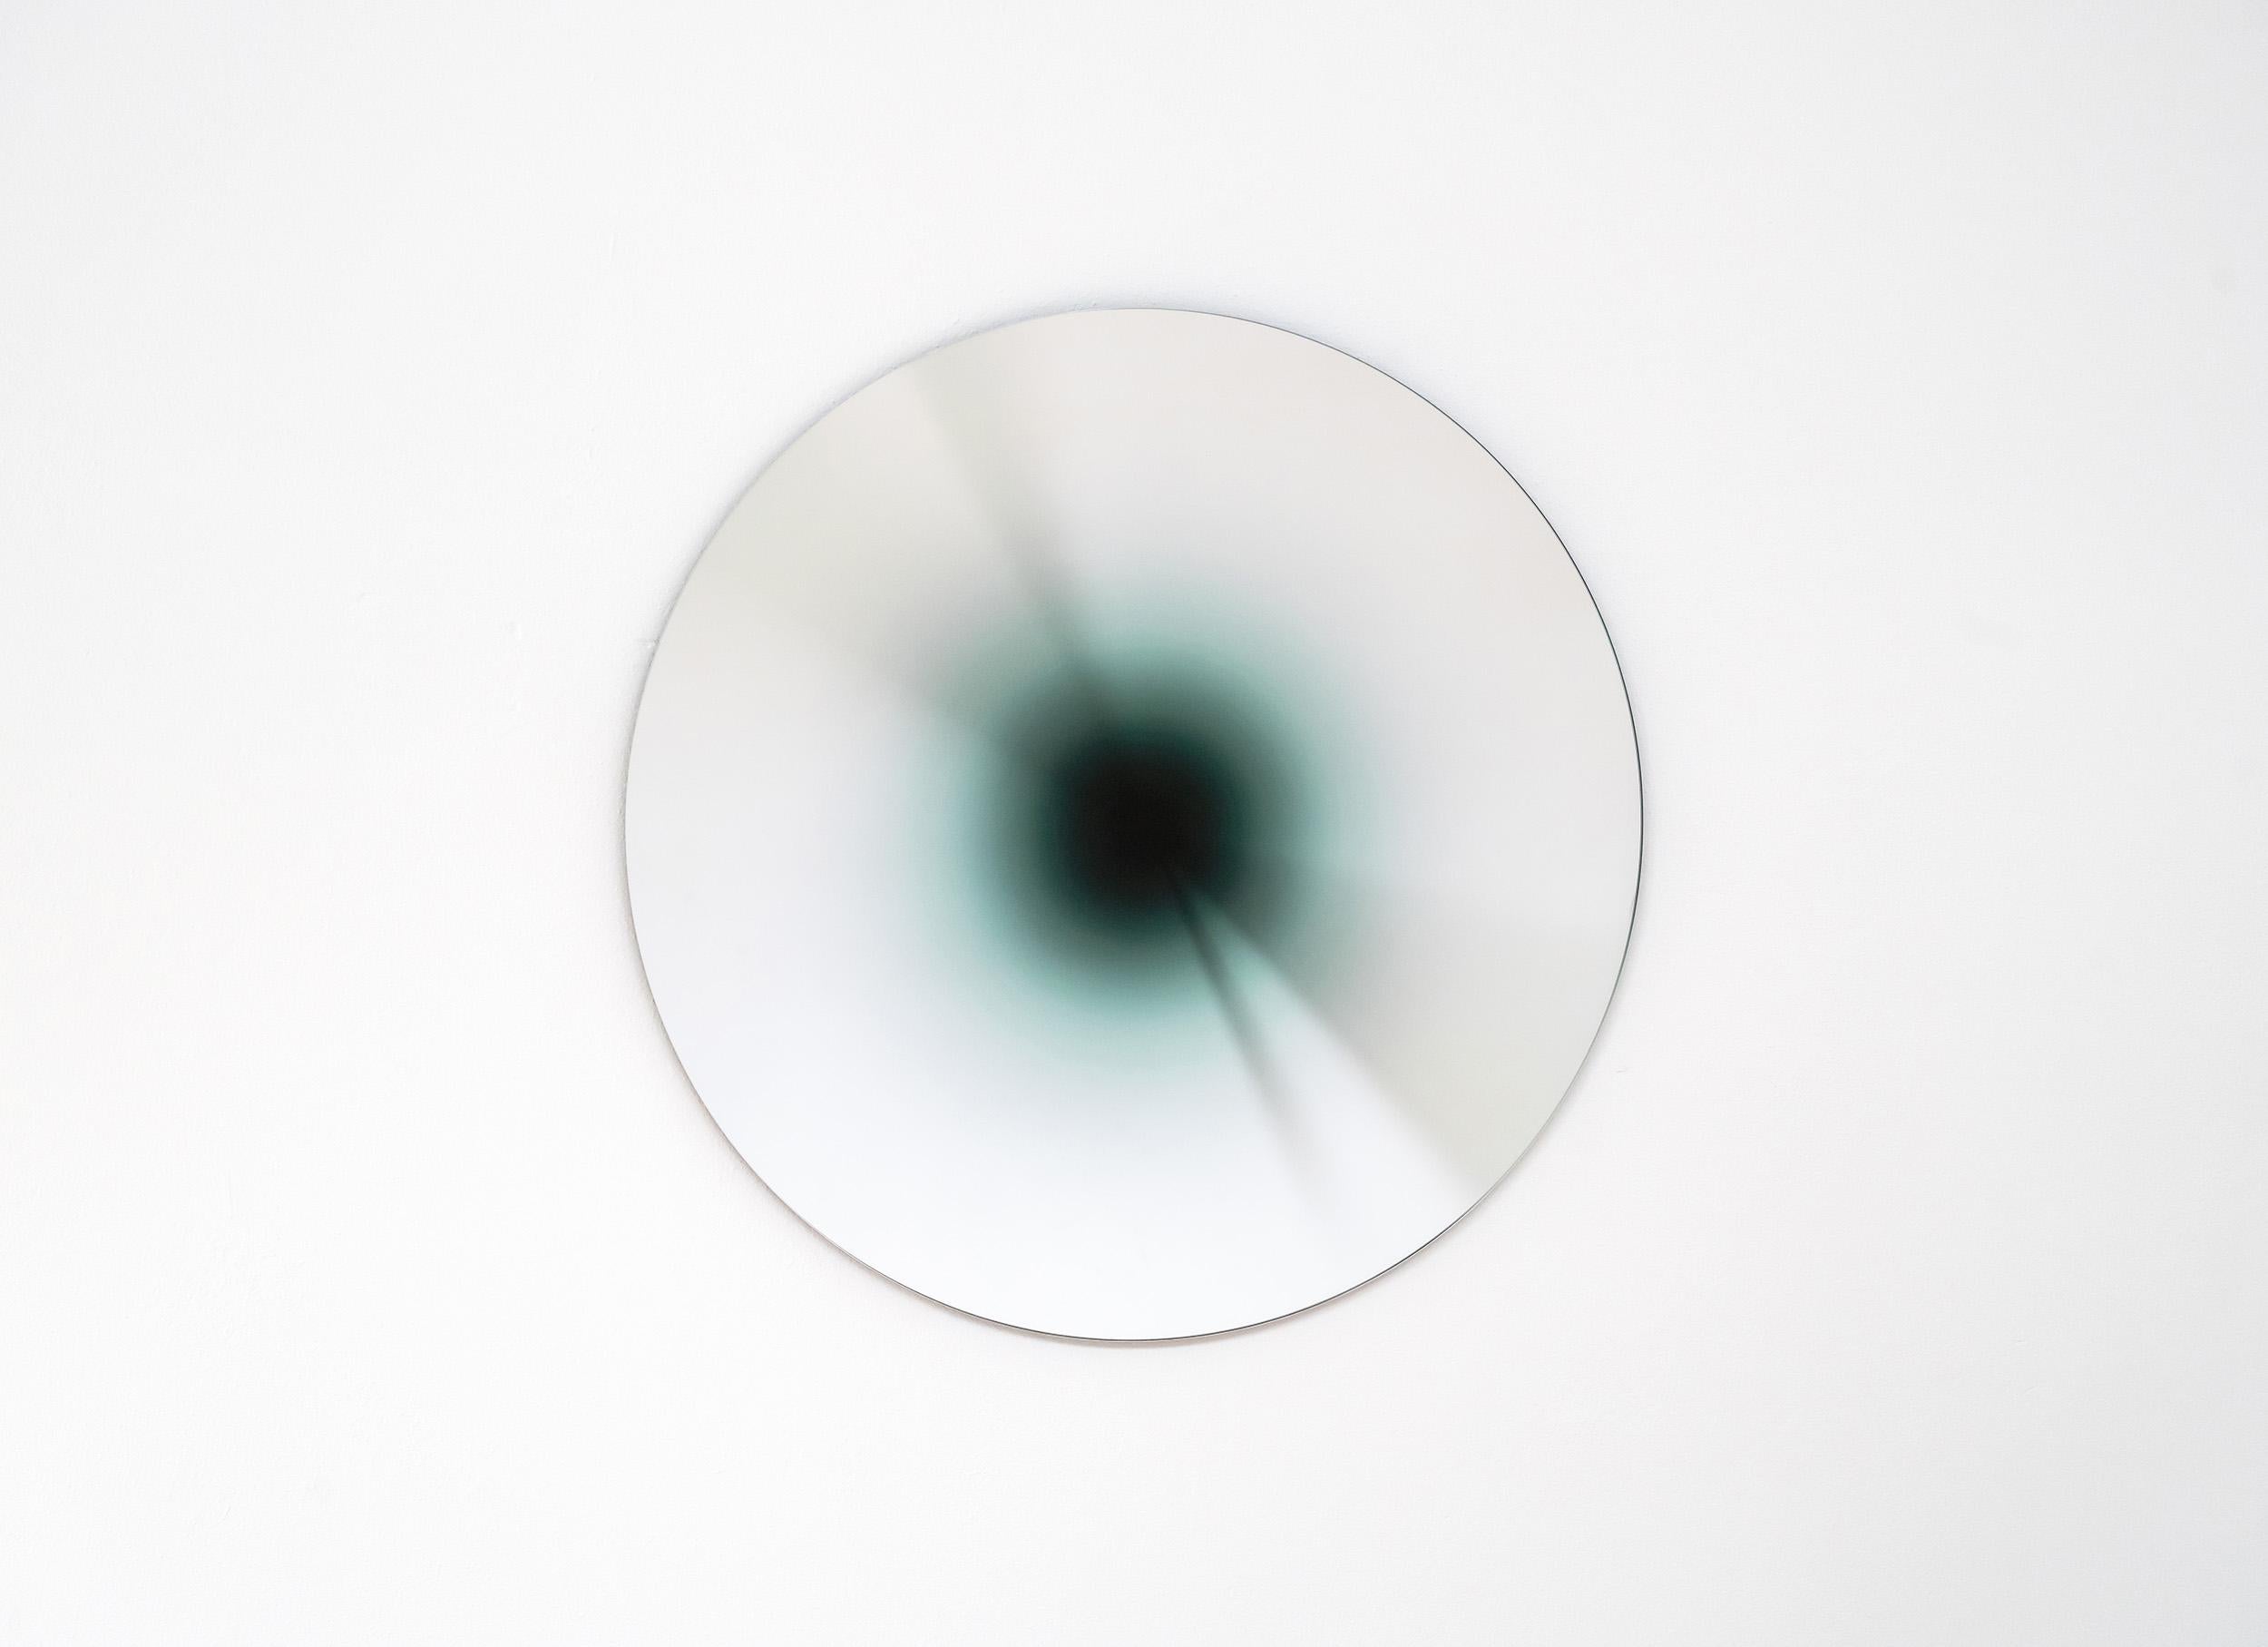 Absence fait partie d'une série limitée de miroirs en verre résultant de l'exploration de l'absence de lumière. 

Son effet de 